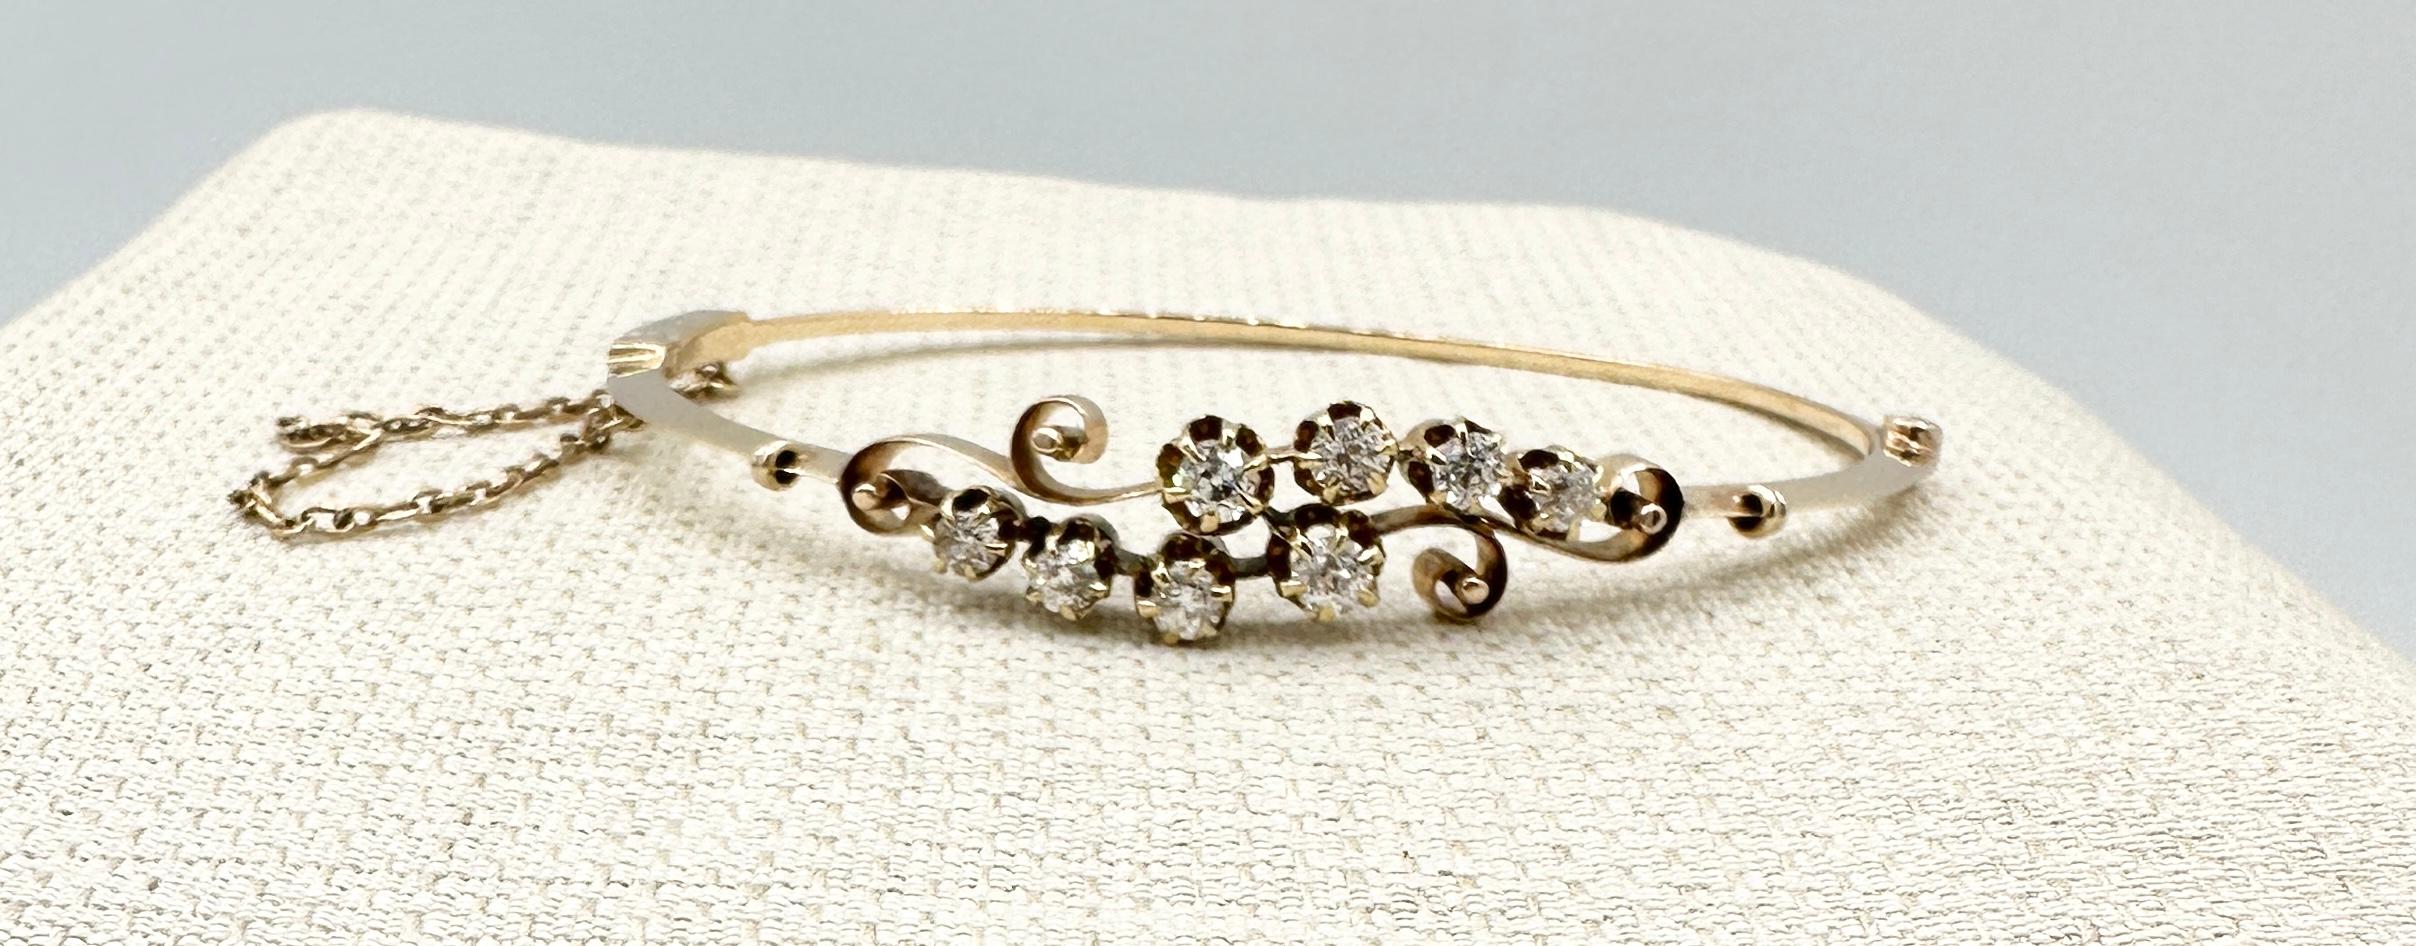 Victorian Old Mine Cut Diamond Bracelet Bangle Antique Art Nouveau 14 Karat Gold For Sale 3